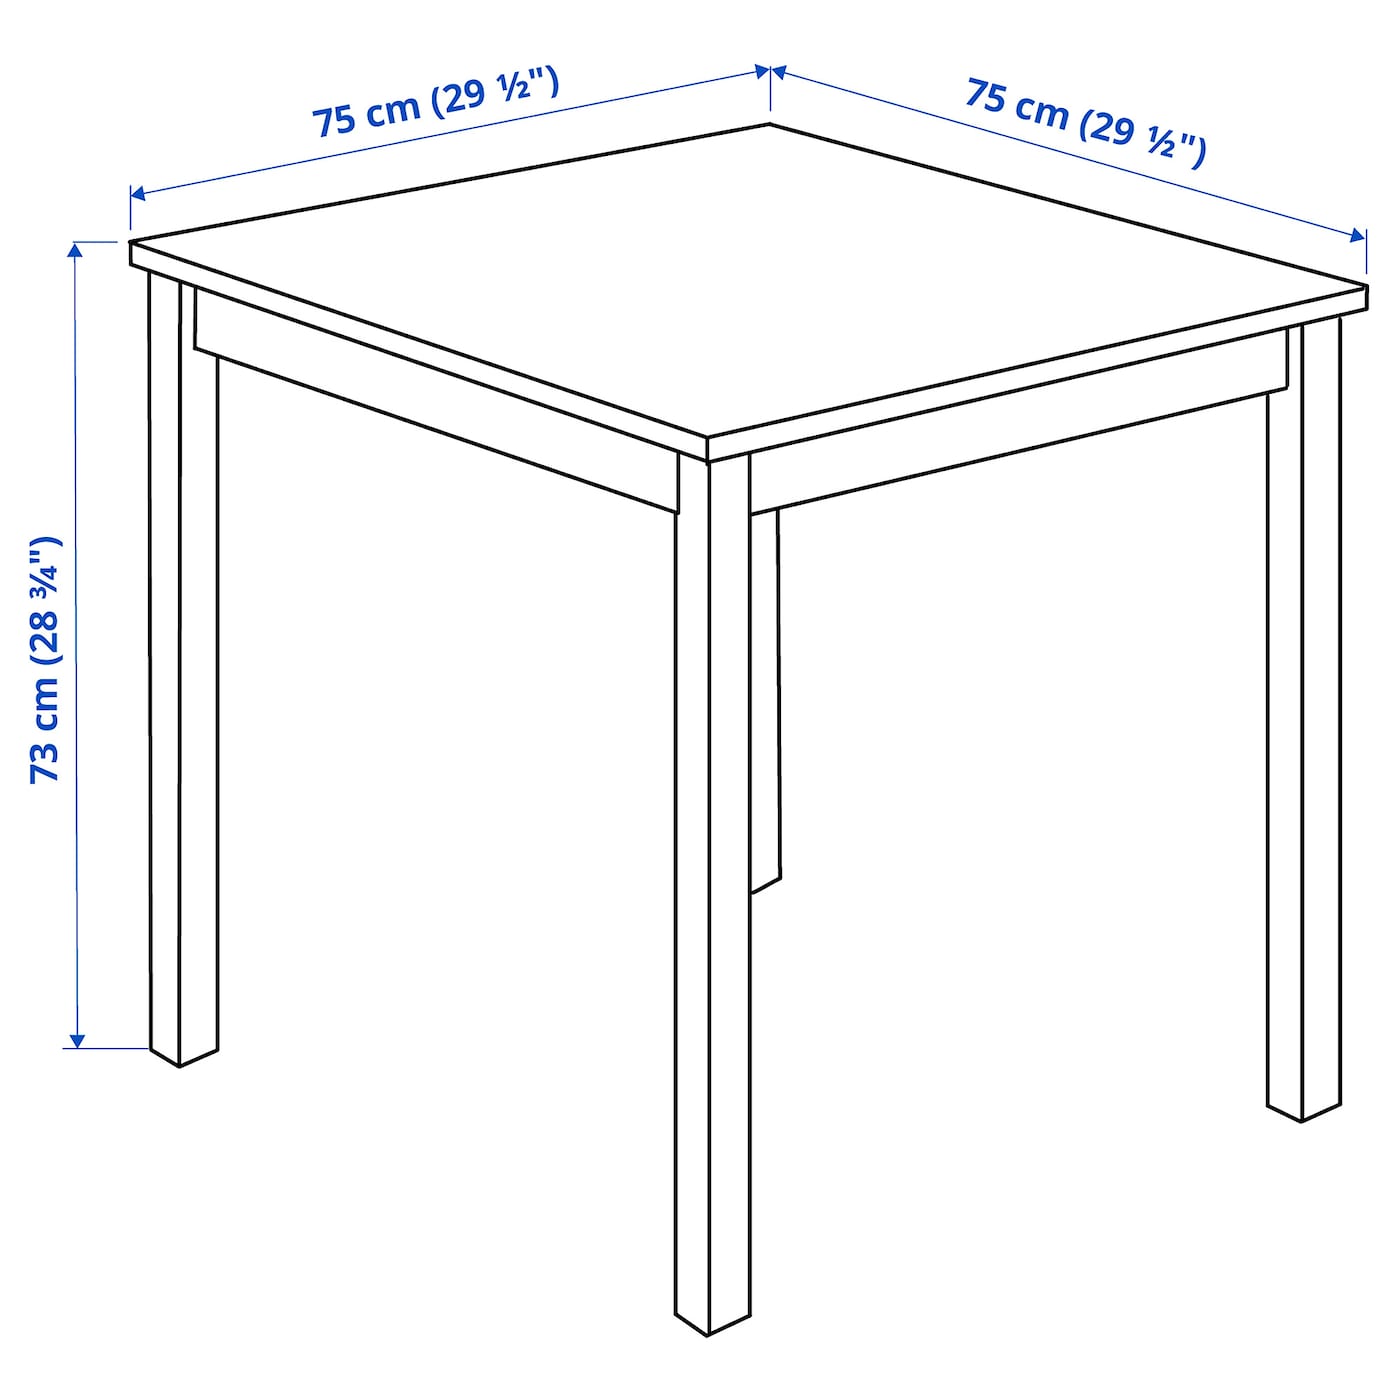 Стол высотой 90 см. Ölmstad ОЛМСТАД стол, белый90x70 см. Стол ОЛМСТАД икеа 90 70. ОЛМСТАД стол, белый, 90x70 см. Стол ikea Ingo 75x75.